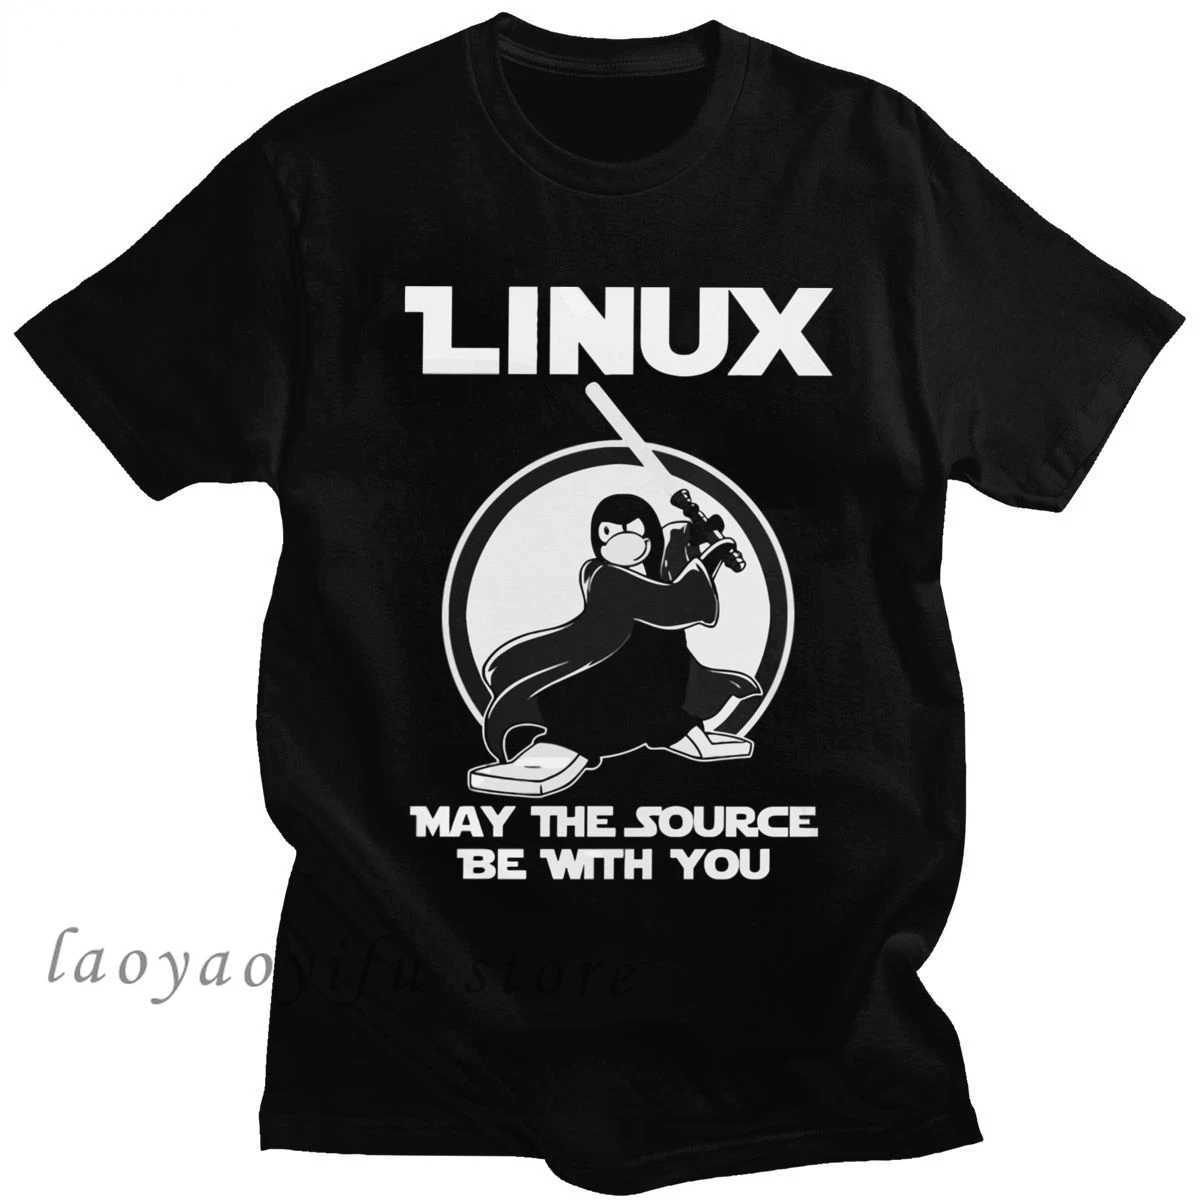 メンズTシャツプログラマーコンピューター開発者gkオタクマンTシャツ面白いlinux t男性ソースがあなたと一緒にいることができますか